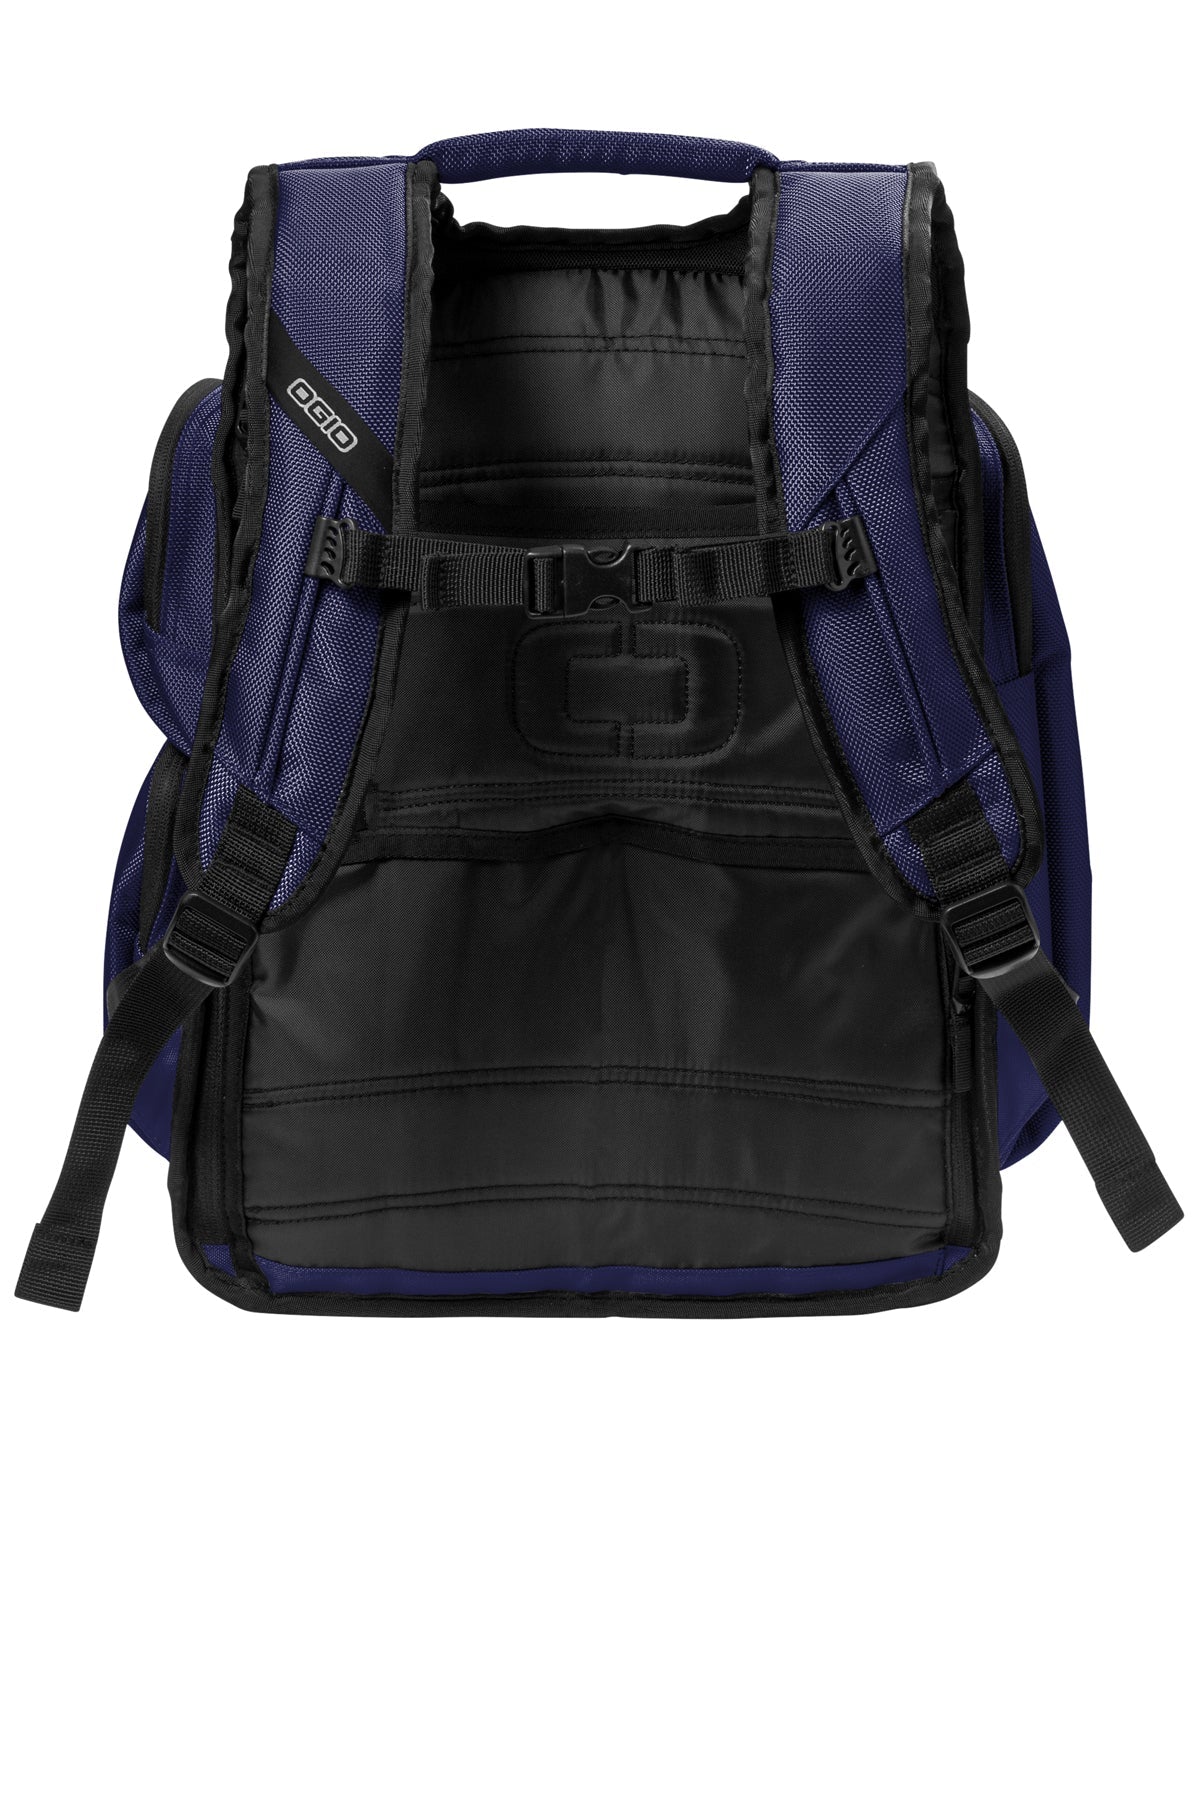 OGIO Metro Ballistic Customzied Backpacks, Navy